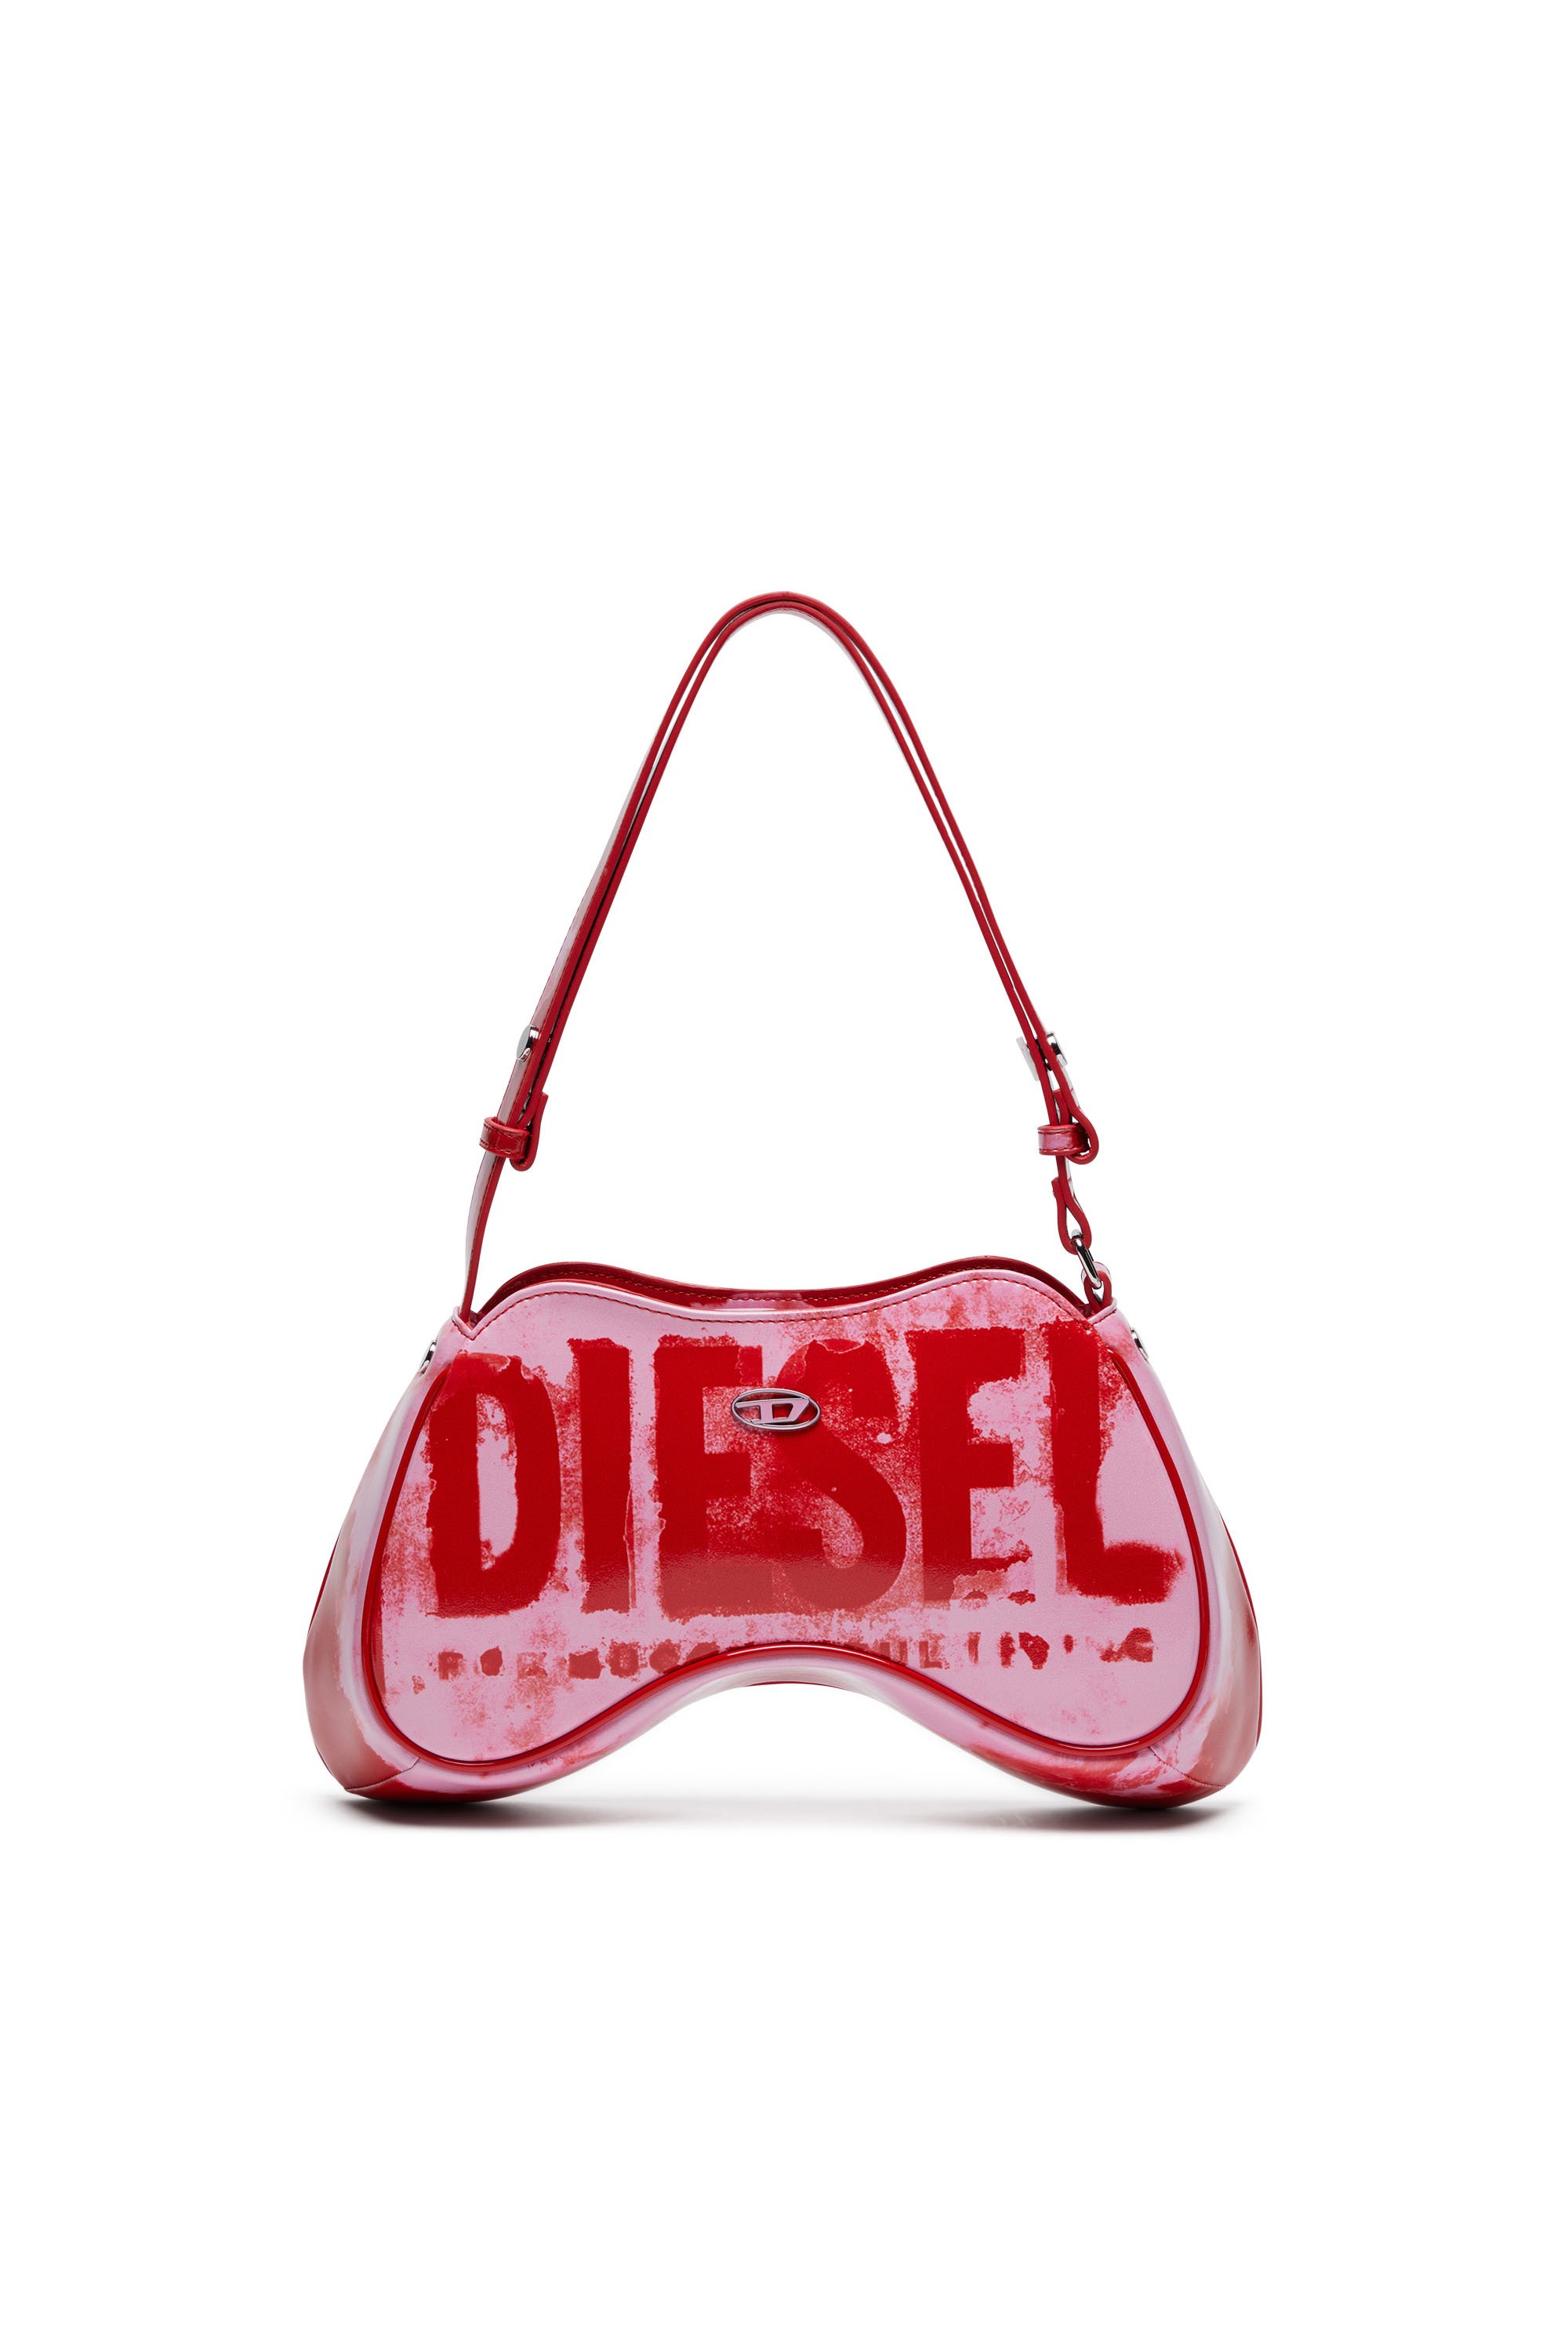 Diesel - PLAY SHOULDER, Pink/Red - Image 1